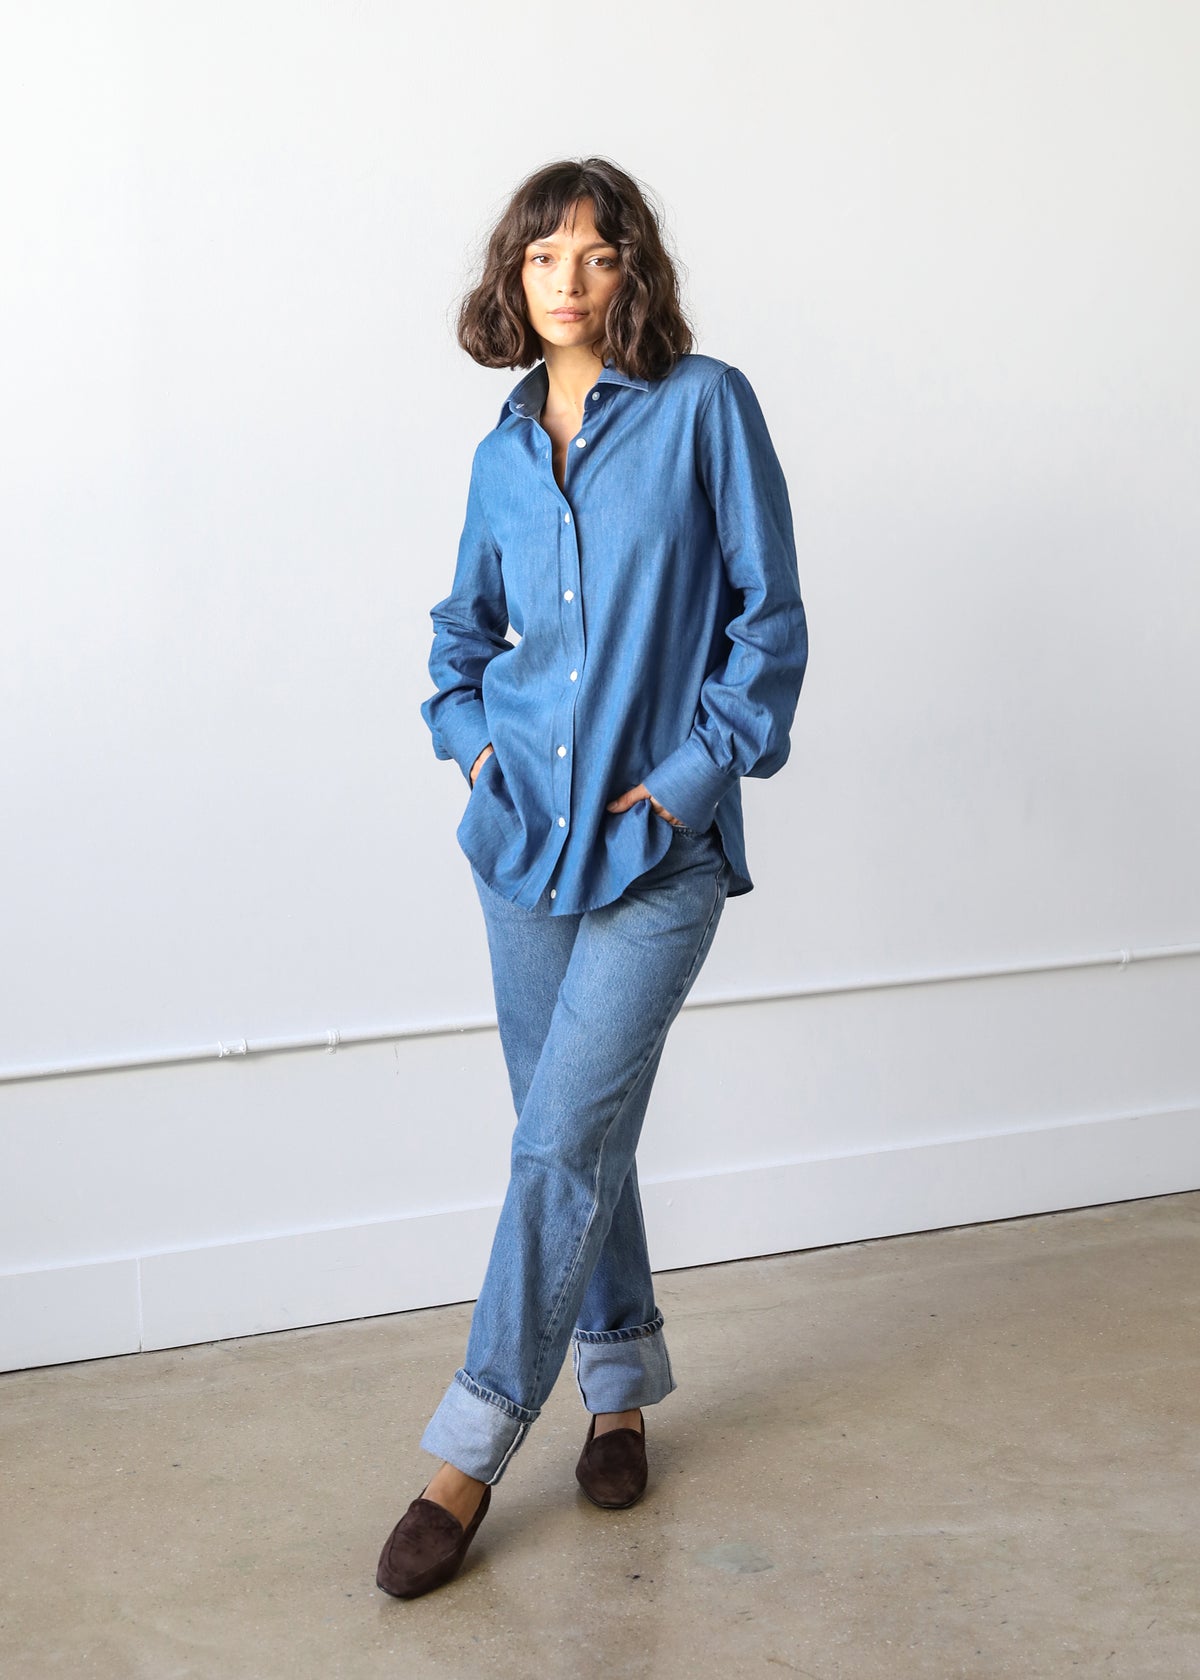 Estella NYC Gemma Button Up Shirt in Denim Twill Cotton Success